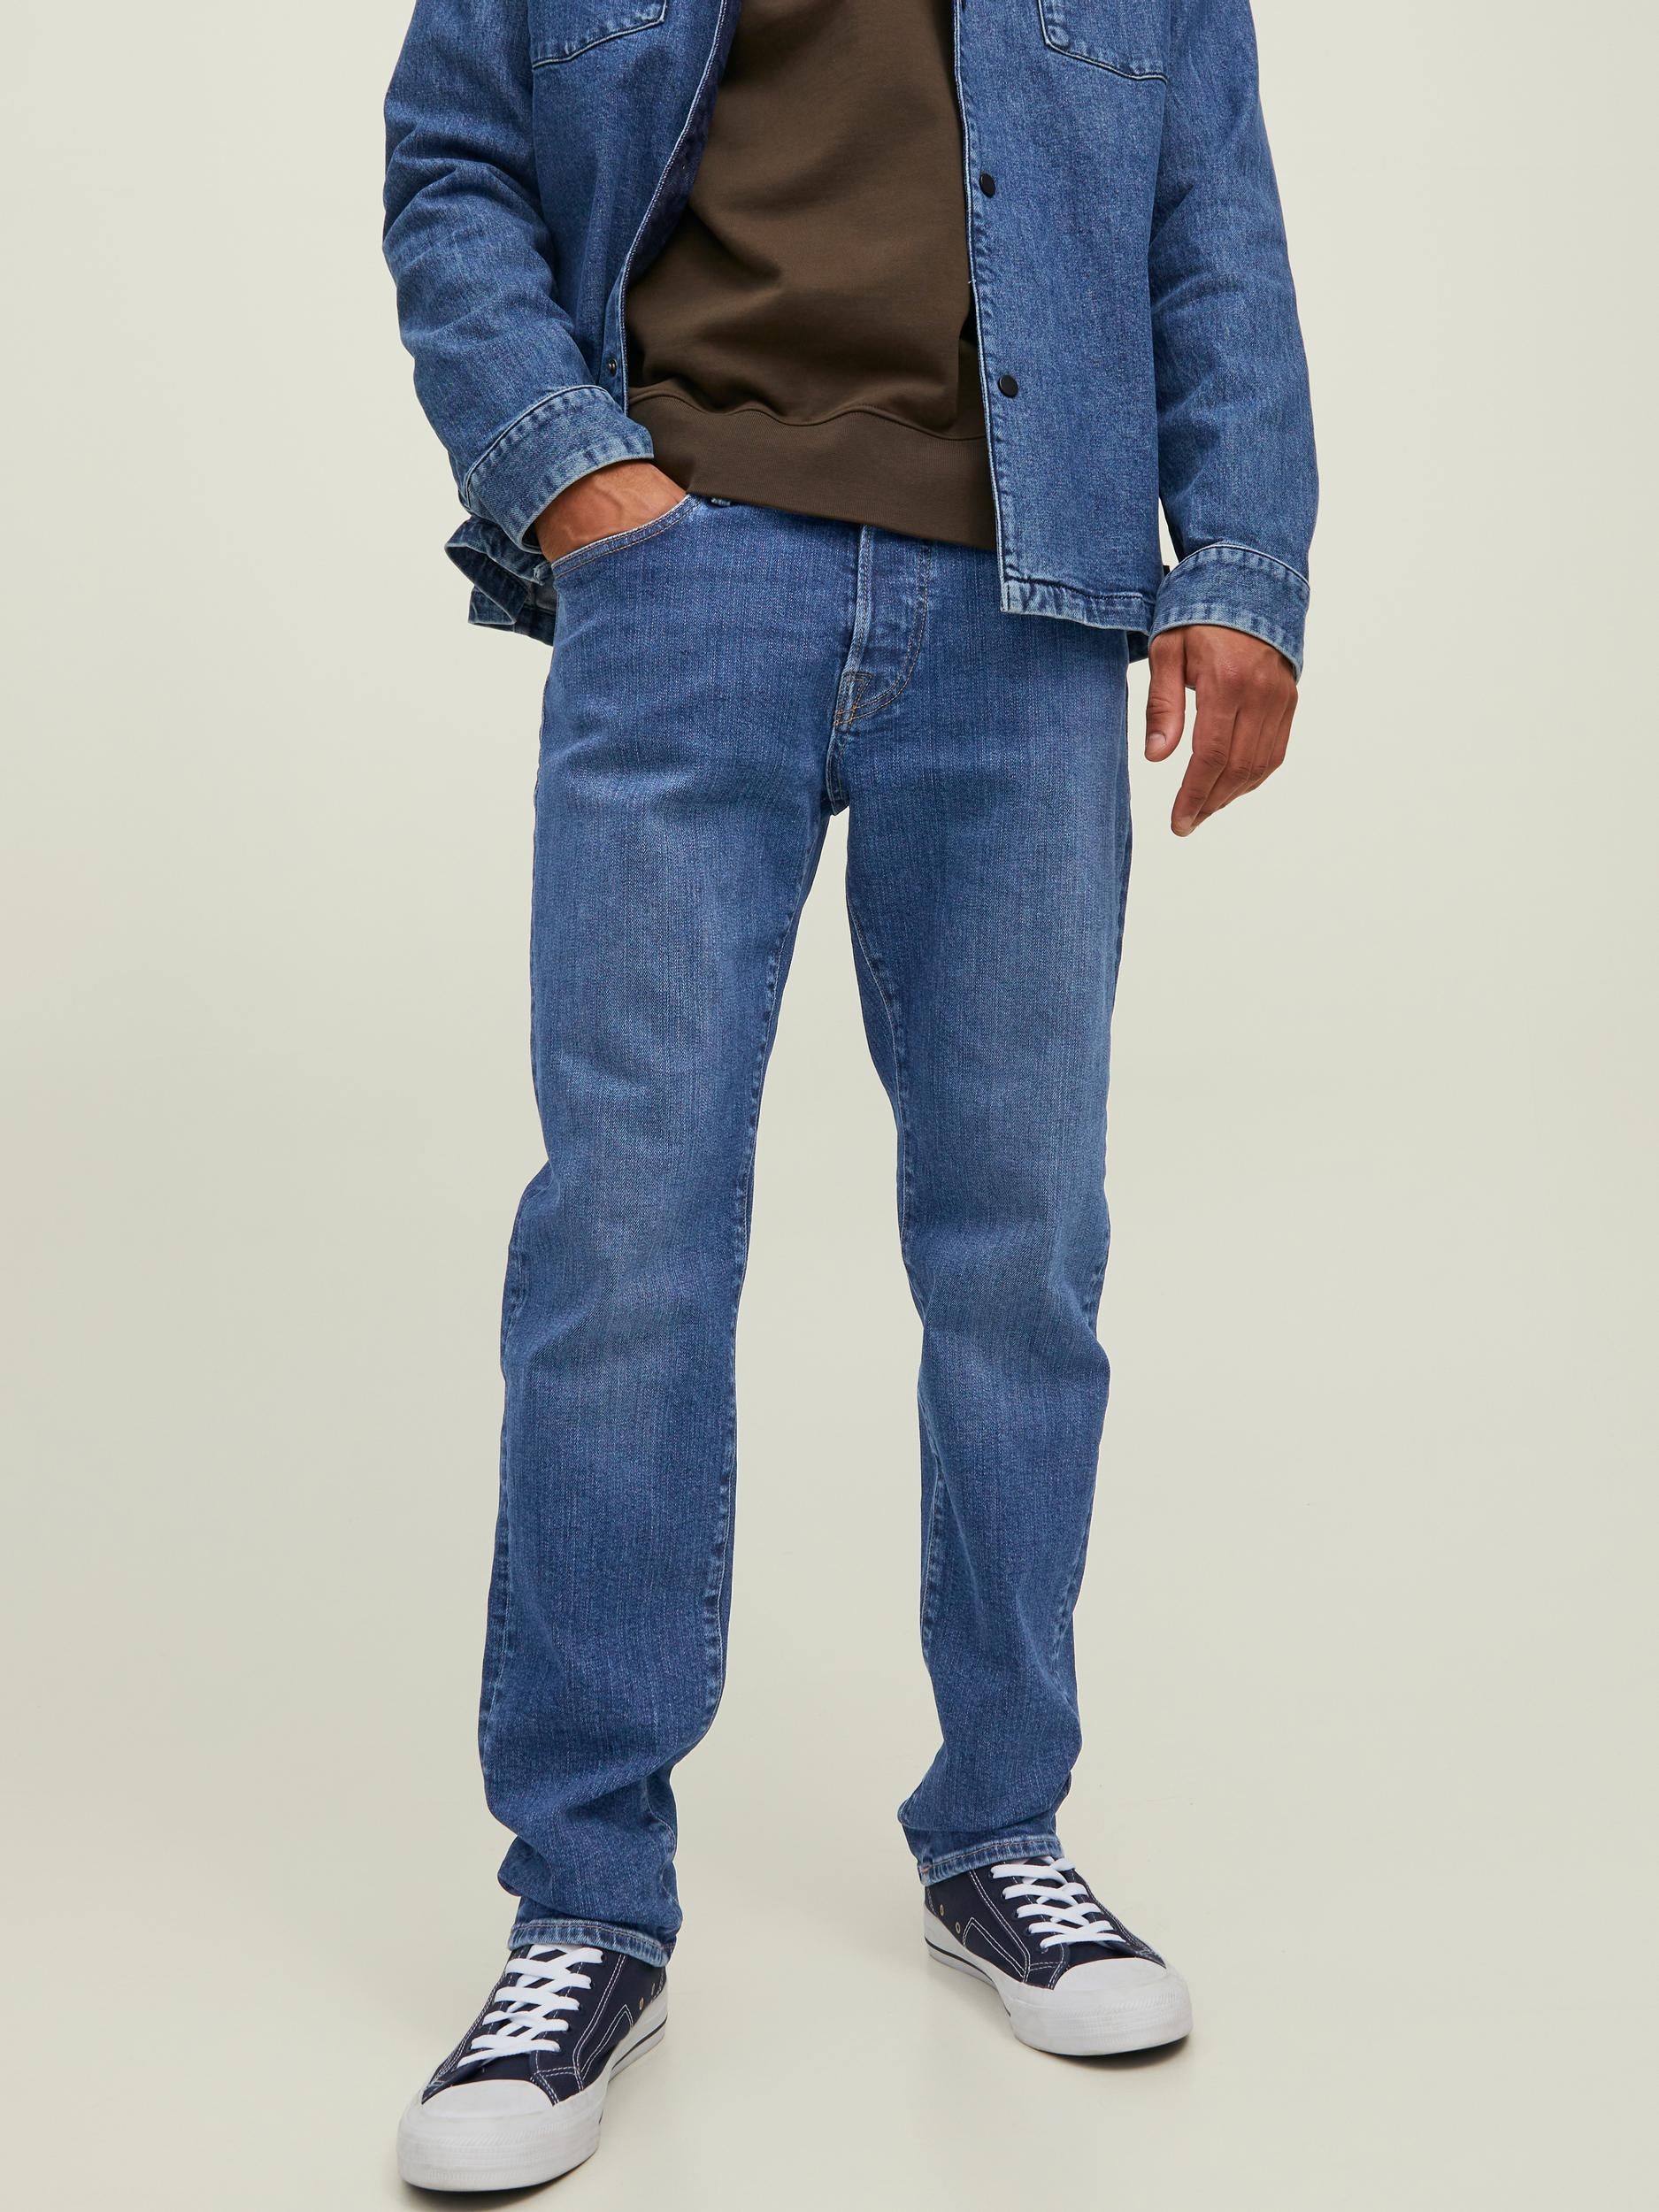 Men's Royal Comfort 811 Jeans-Front View